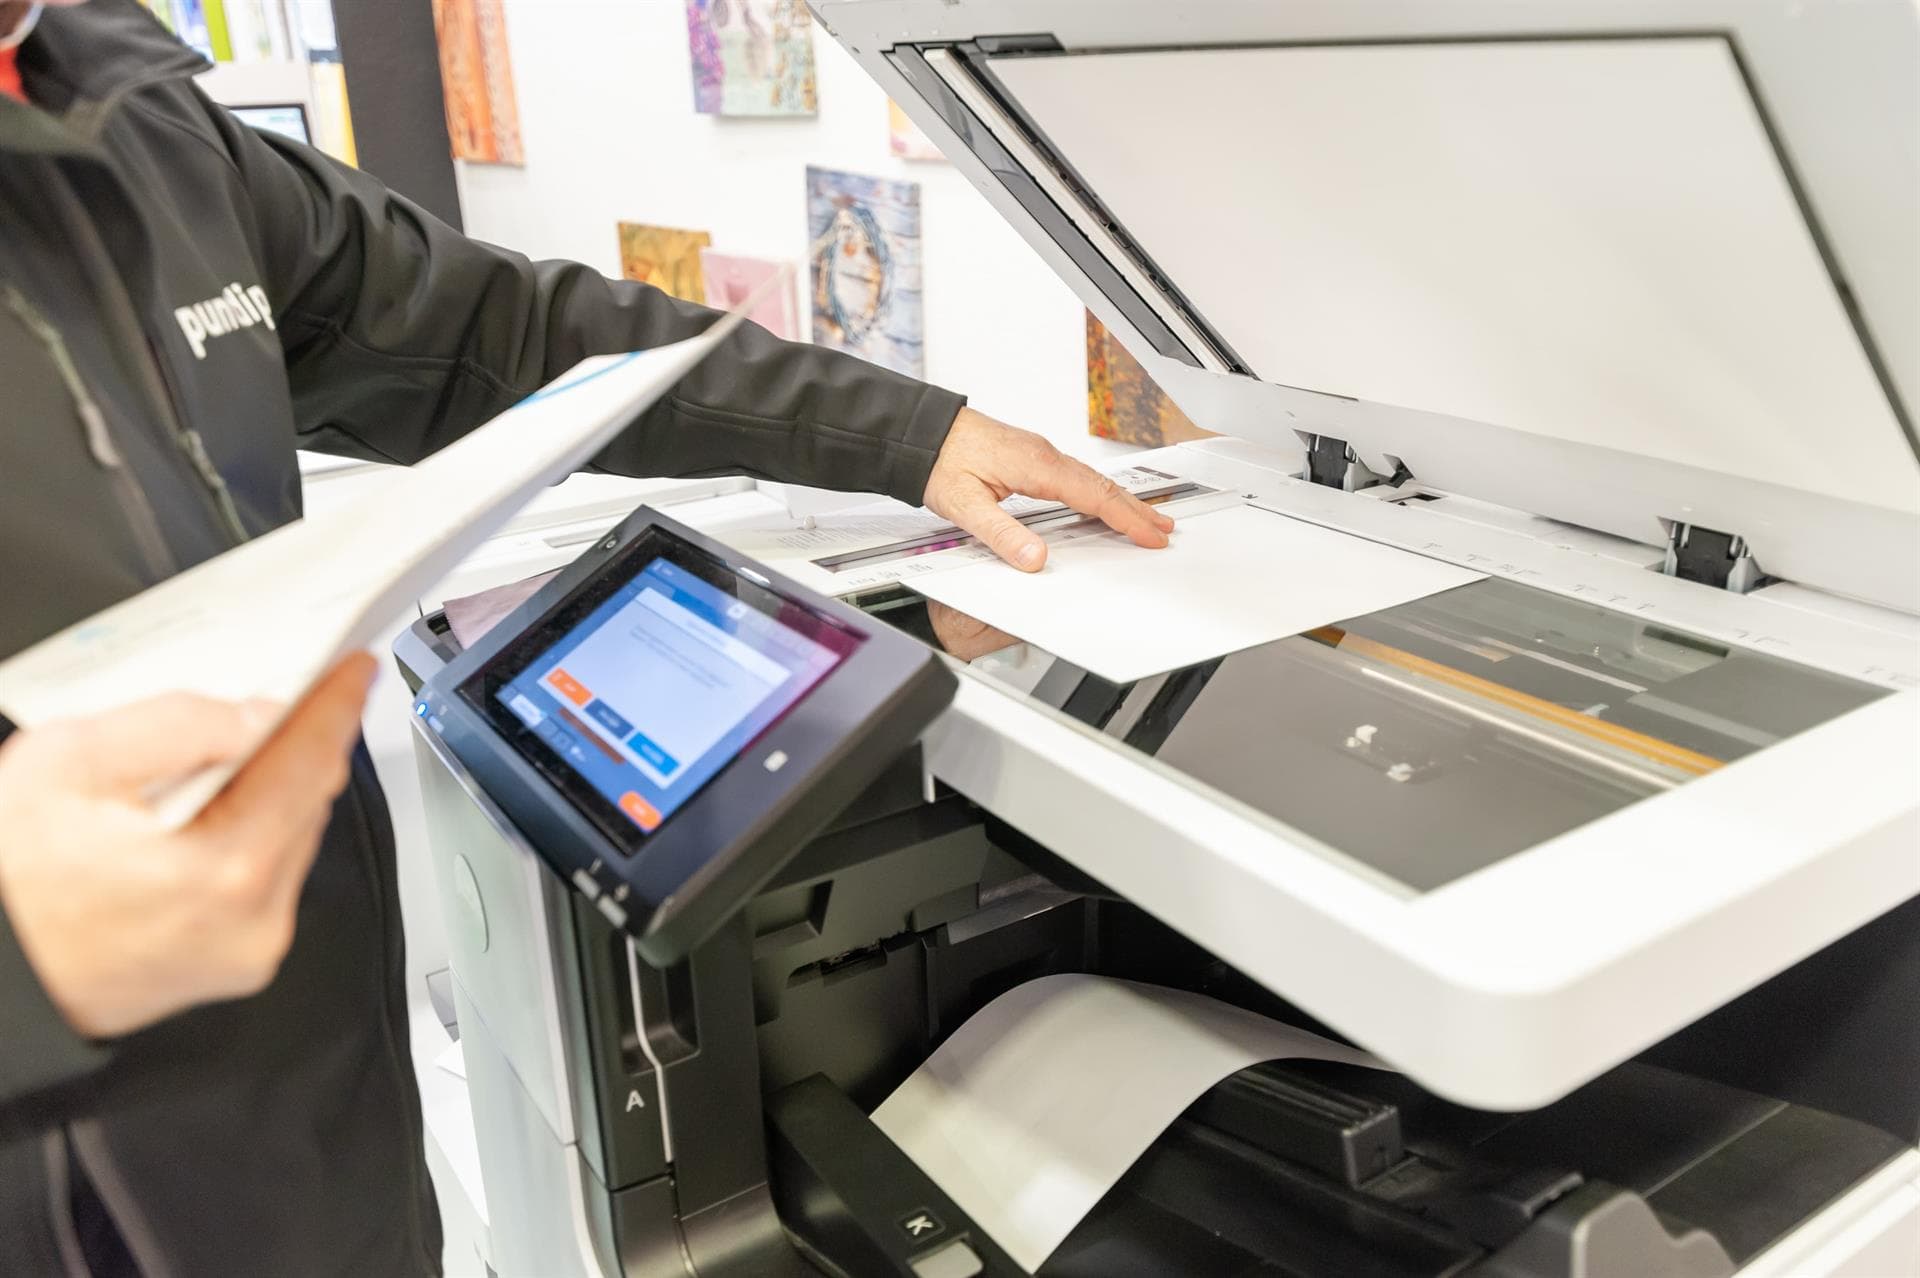 ¿Qué ventajas tiene la impresión digital frente a la impresión offset?